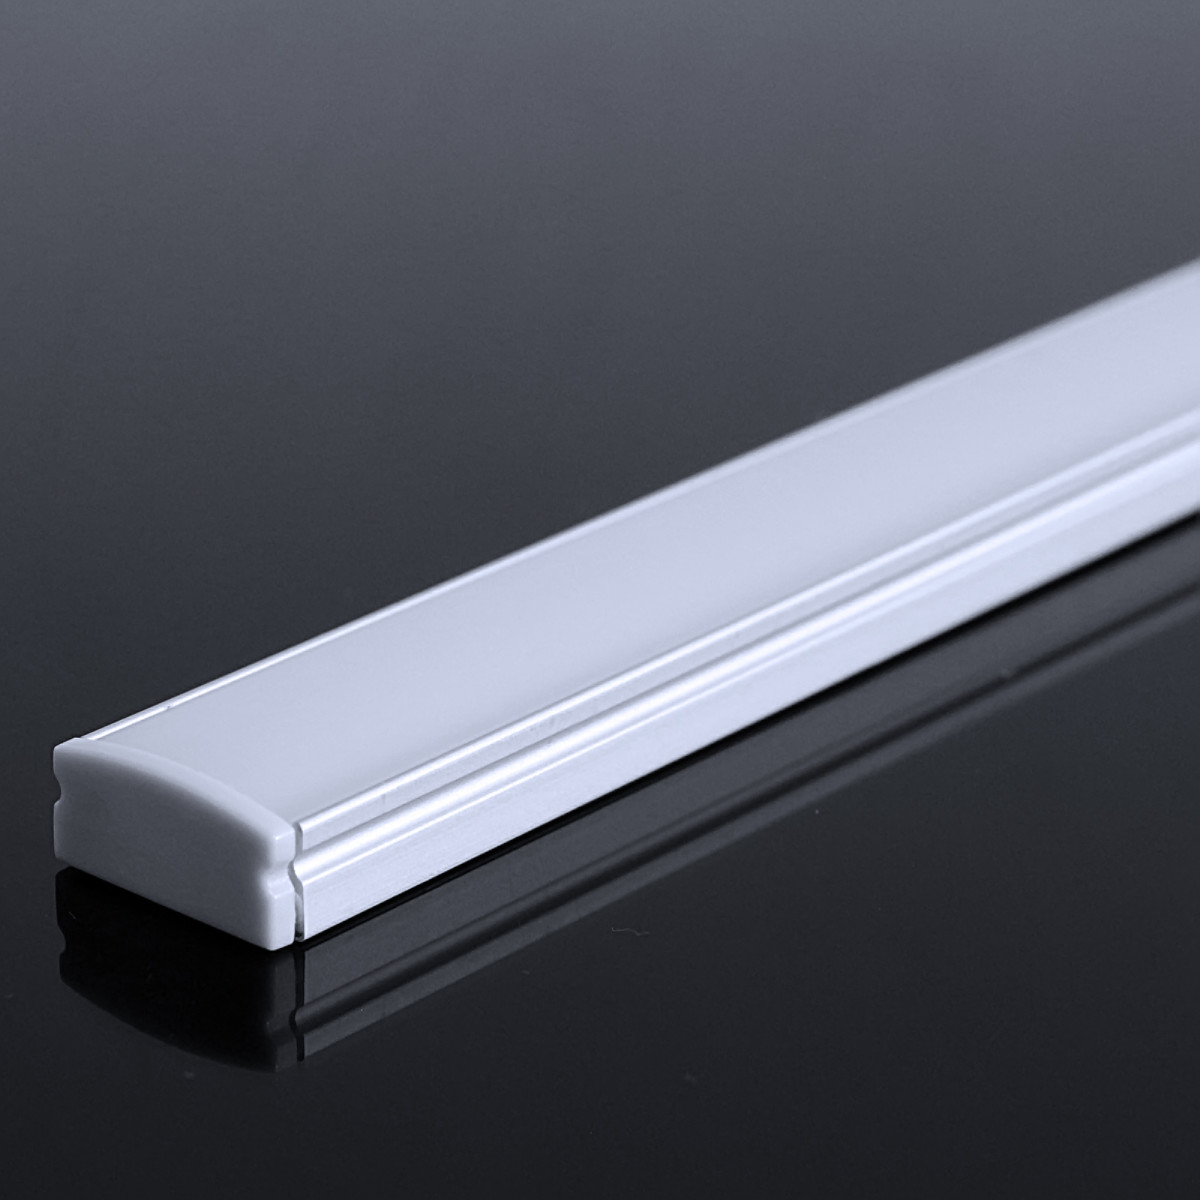 LED Flachprofil "Slim-Line" | Abdeckung diffus | Zuschnitt auf 29cm |